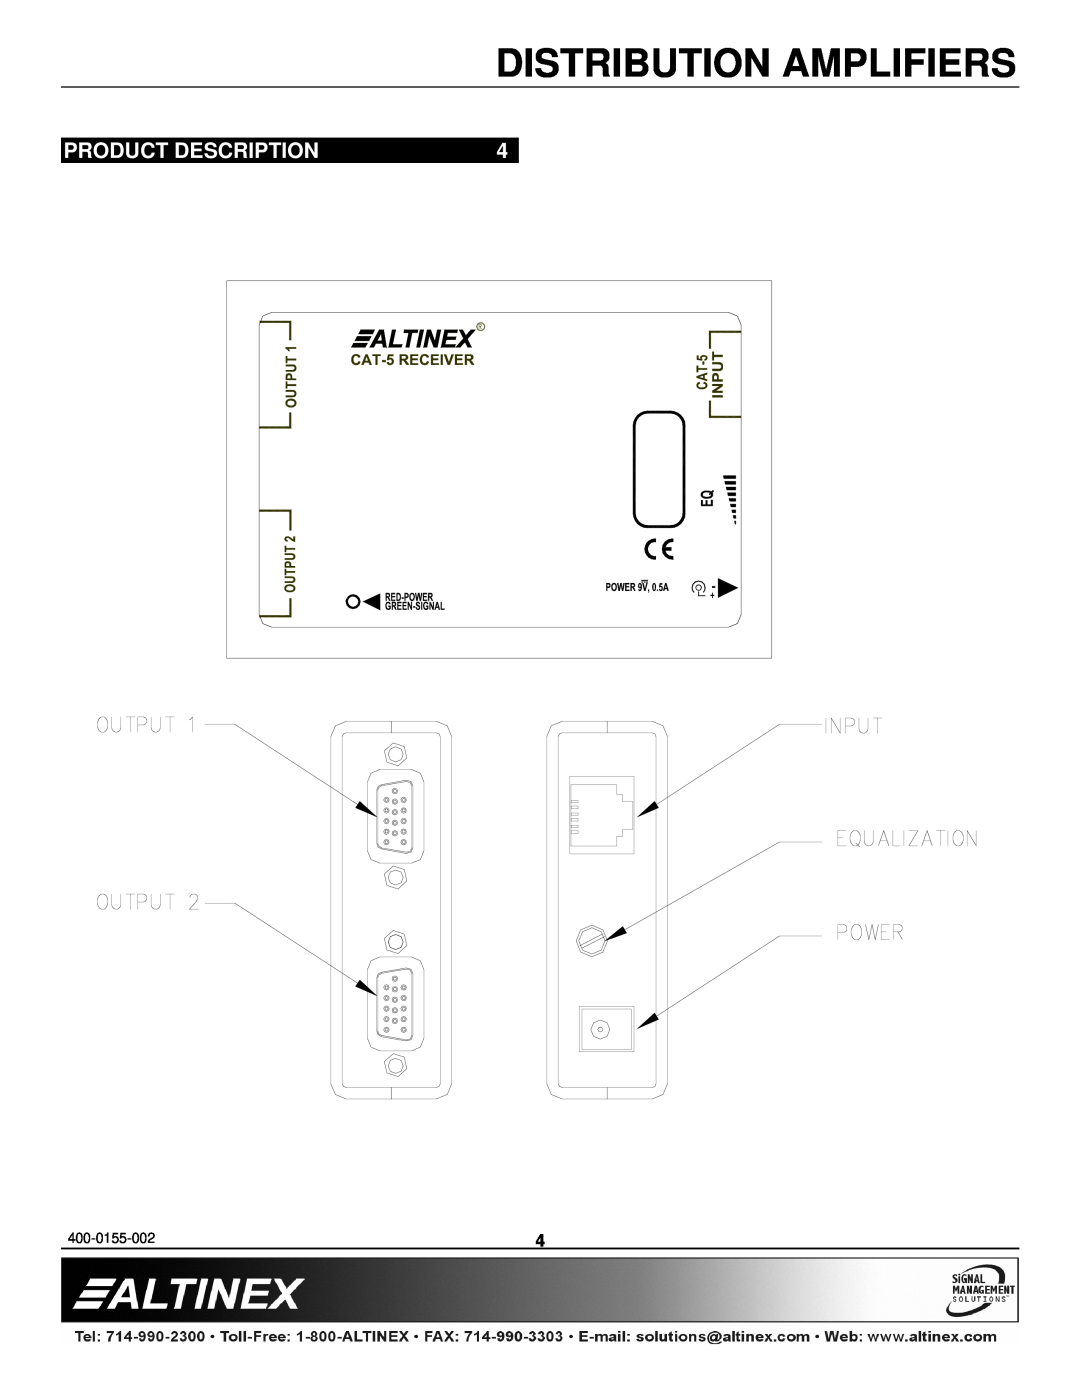 Altinex DA1921SX manual Product Description, Distribution Amplifiers 